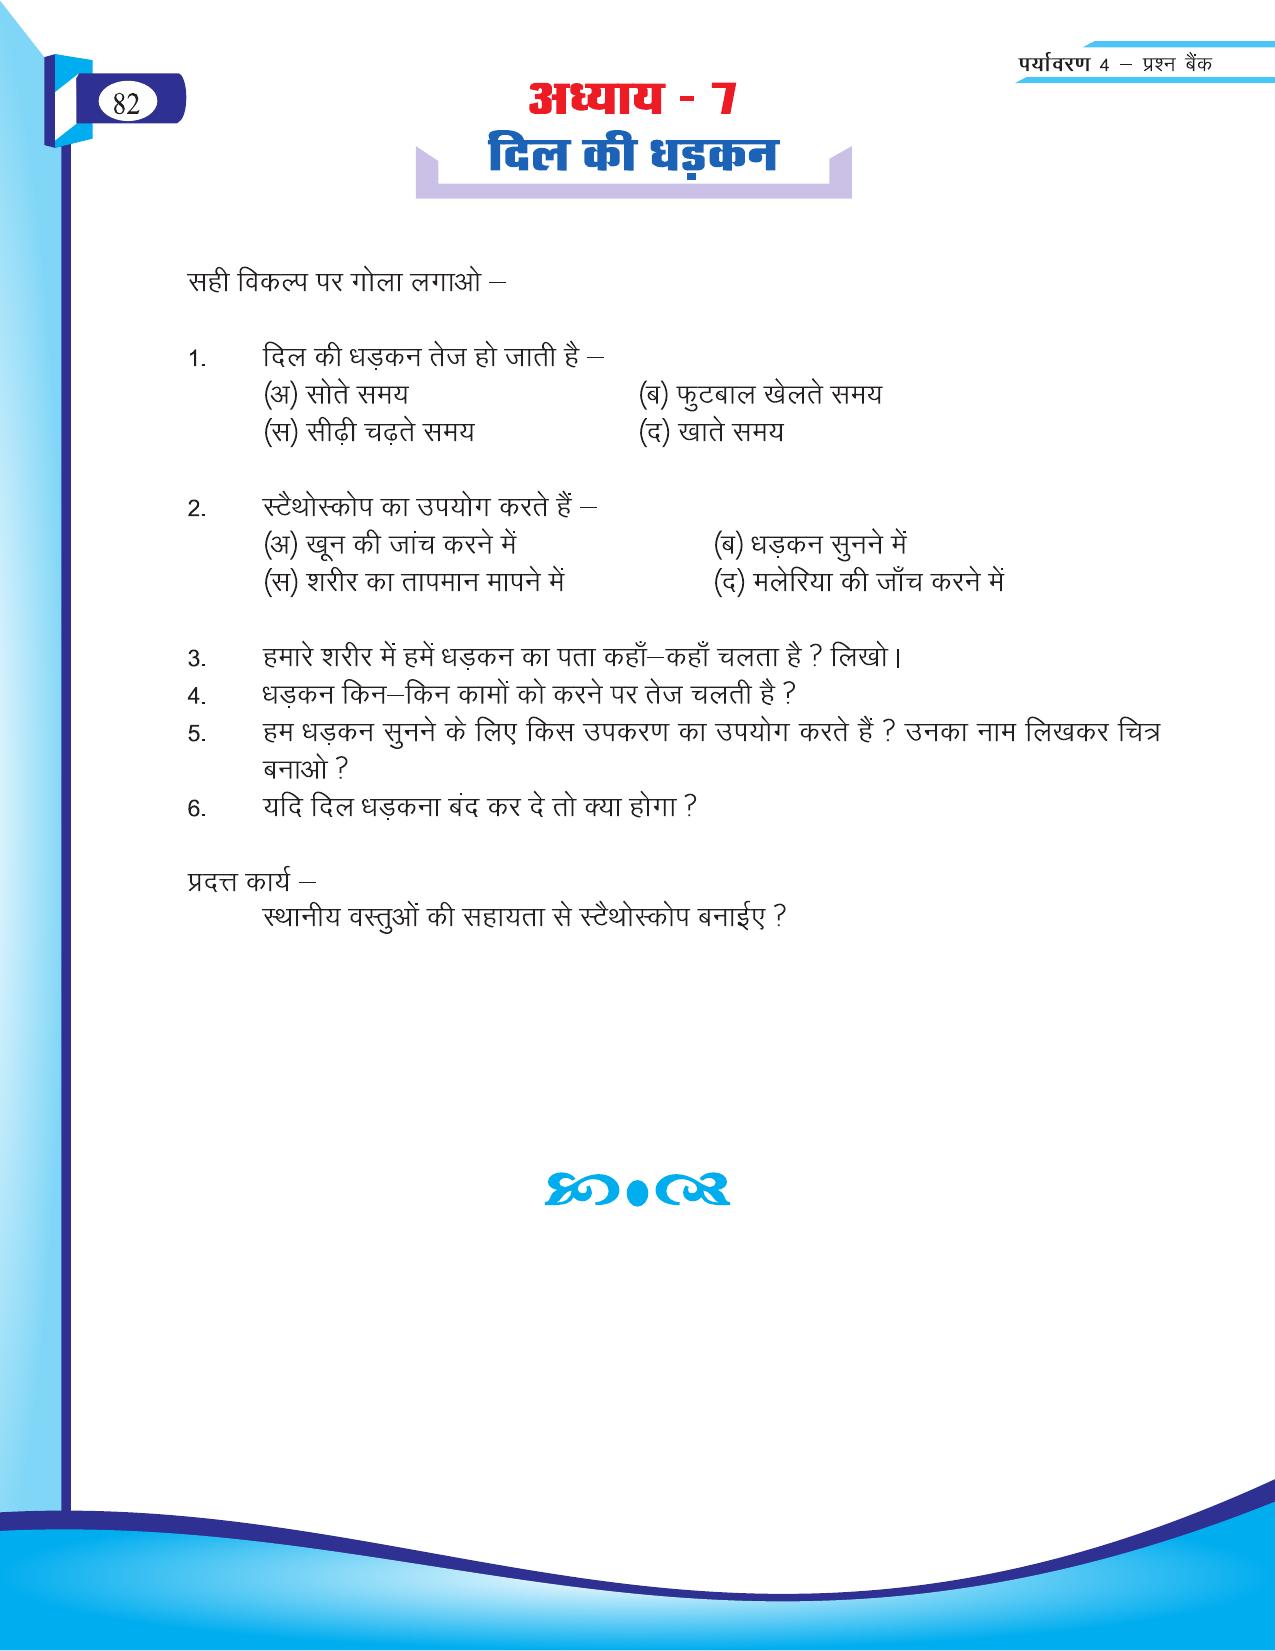 Chhattisgarh Board Class 4 EVS Question Bank 2015-16 - Page 11